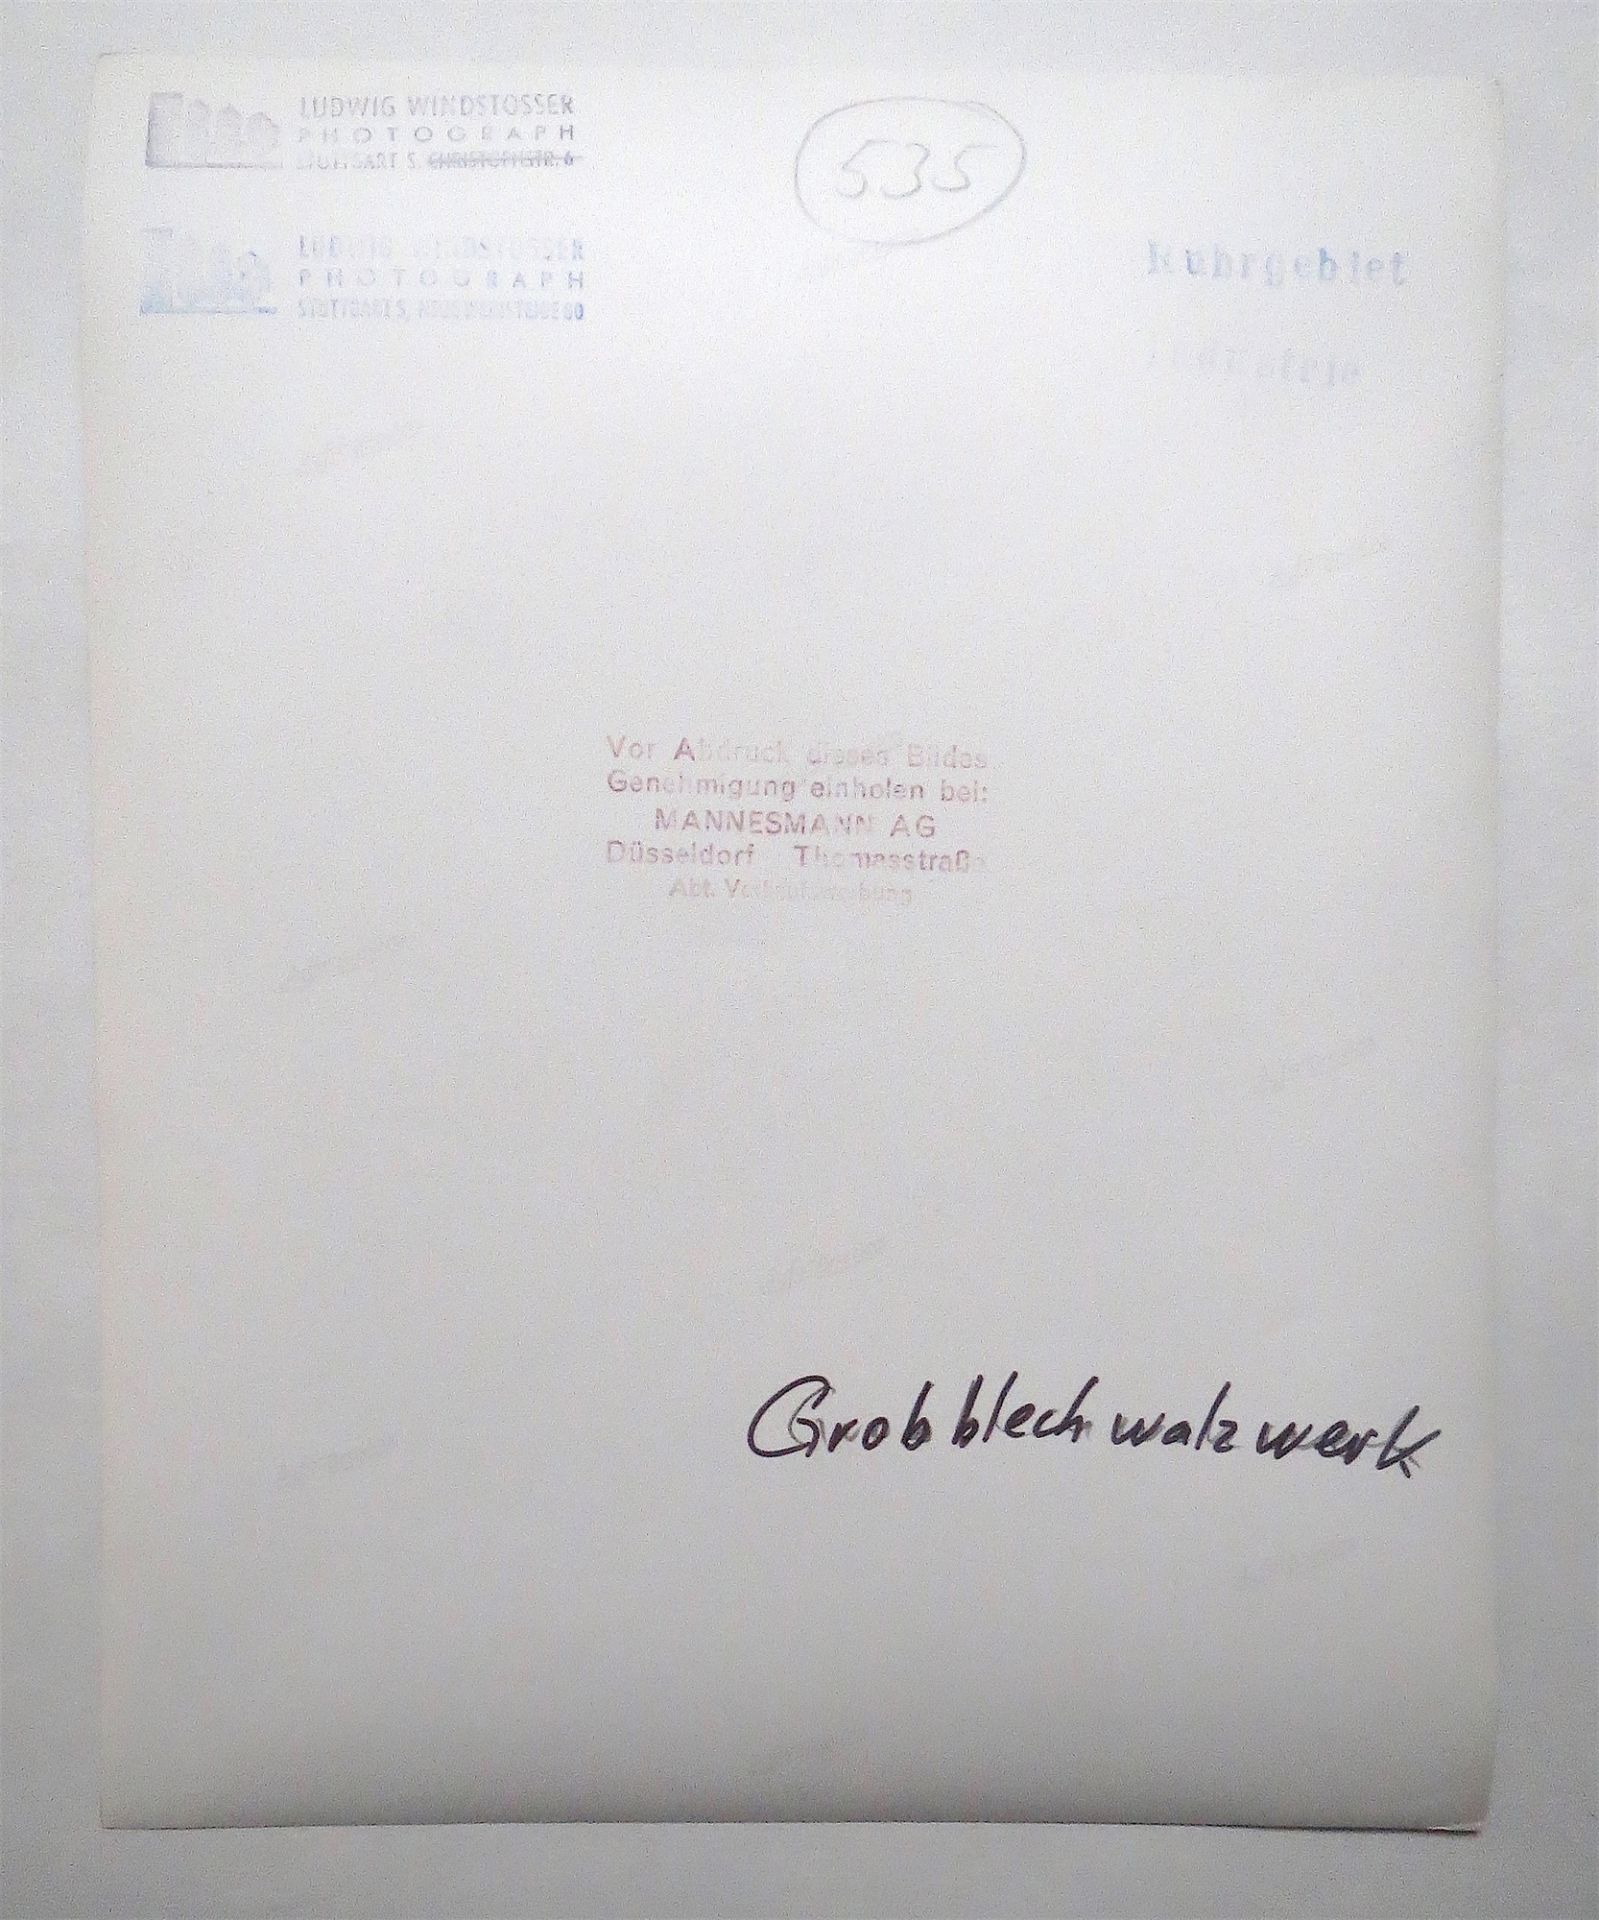 Ludwig Windstosser. „Grobblechwalzwerk“, Mannesmann, Duisburg. 1955 - Bild 2 aus 4